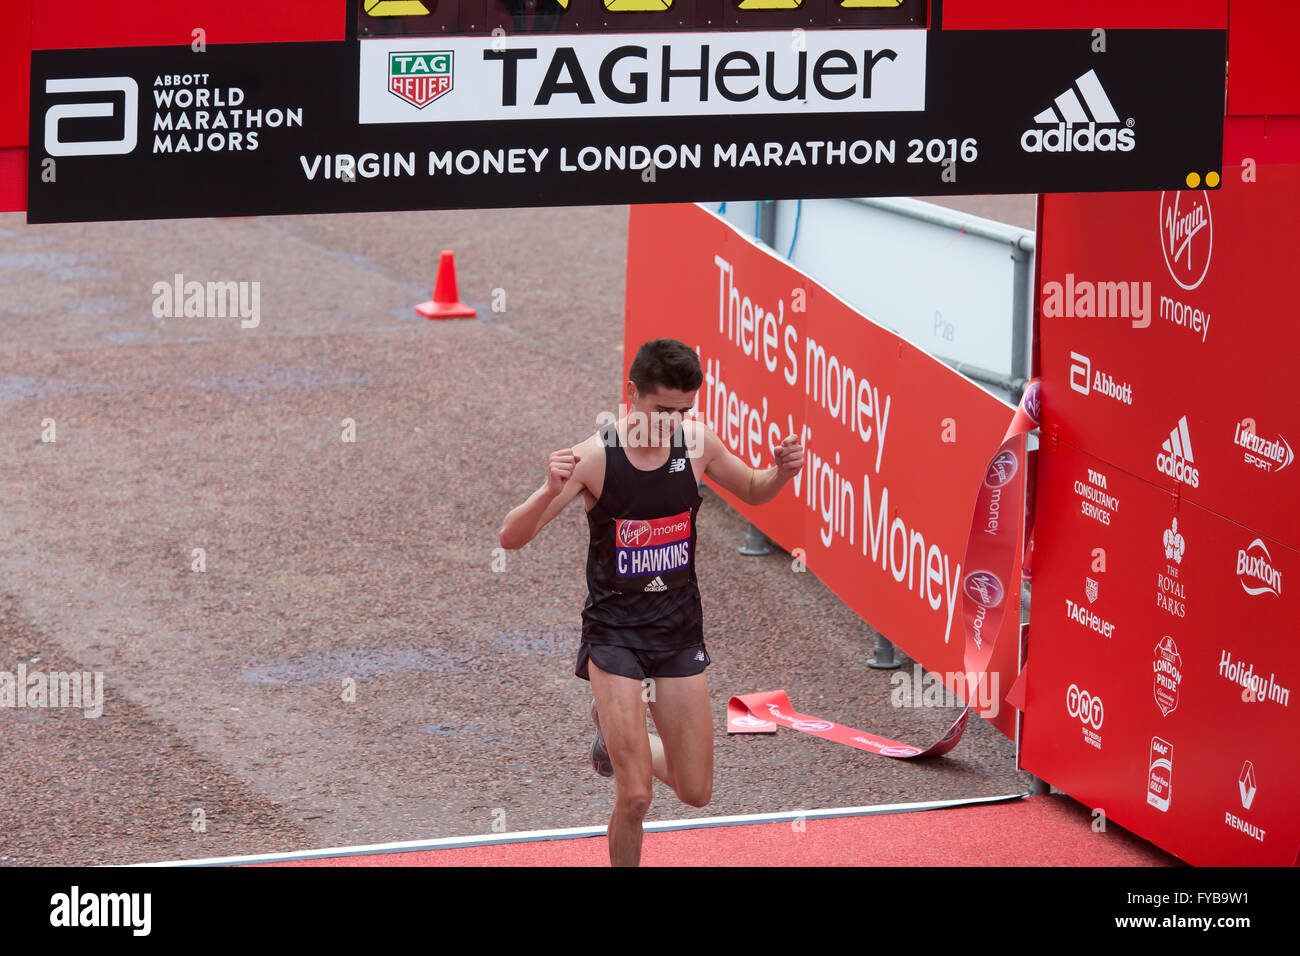 Londra, UK, 24 aprile 2016,Charles Hawkins si qualifica per la Rio giochi olimpici alla Virgin London Marathon 201 Credito: Keith Larby/Alamy Live News Foto Stock